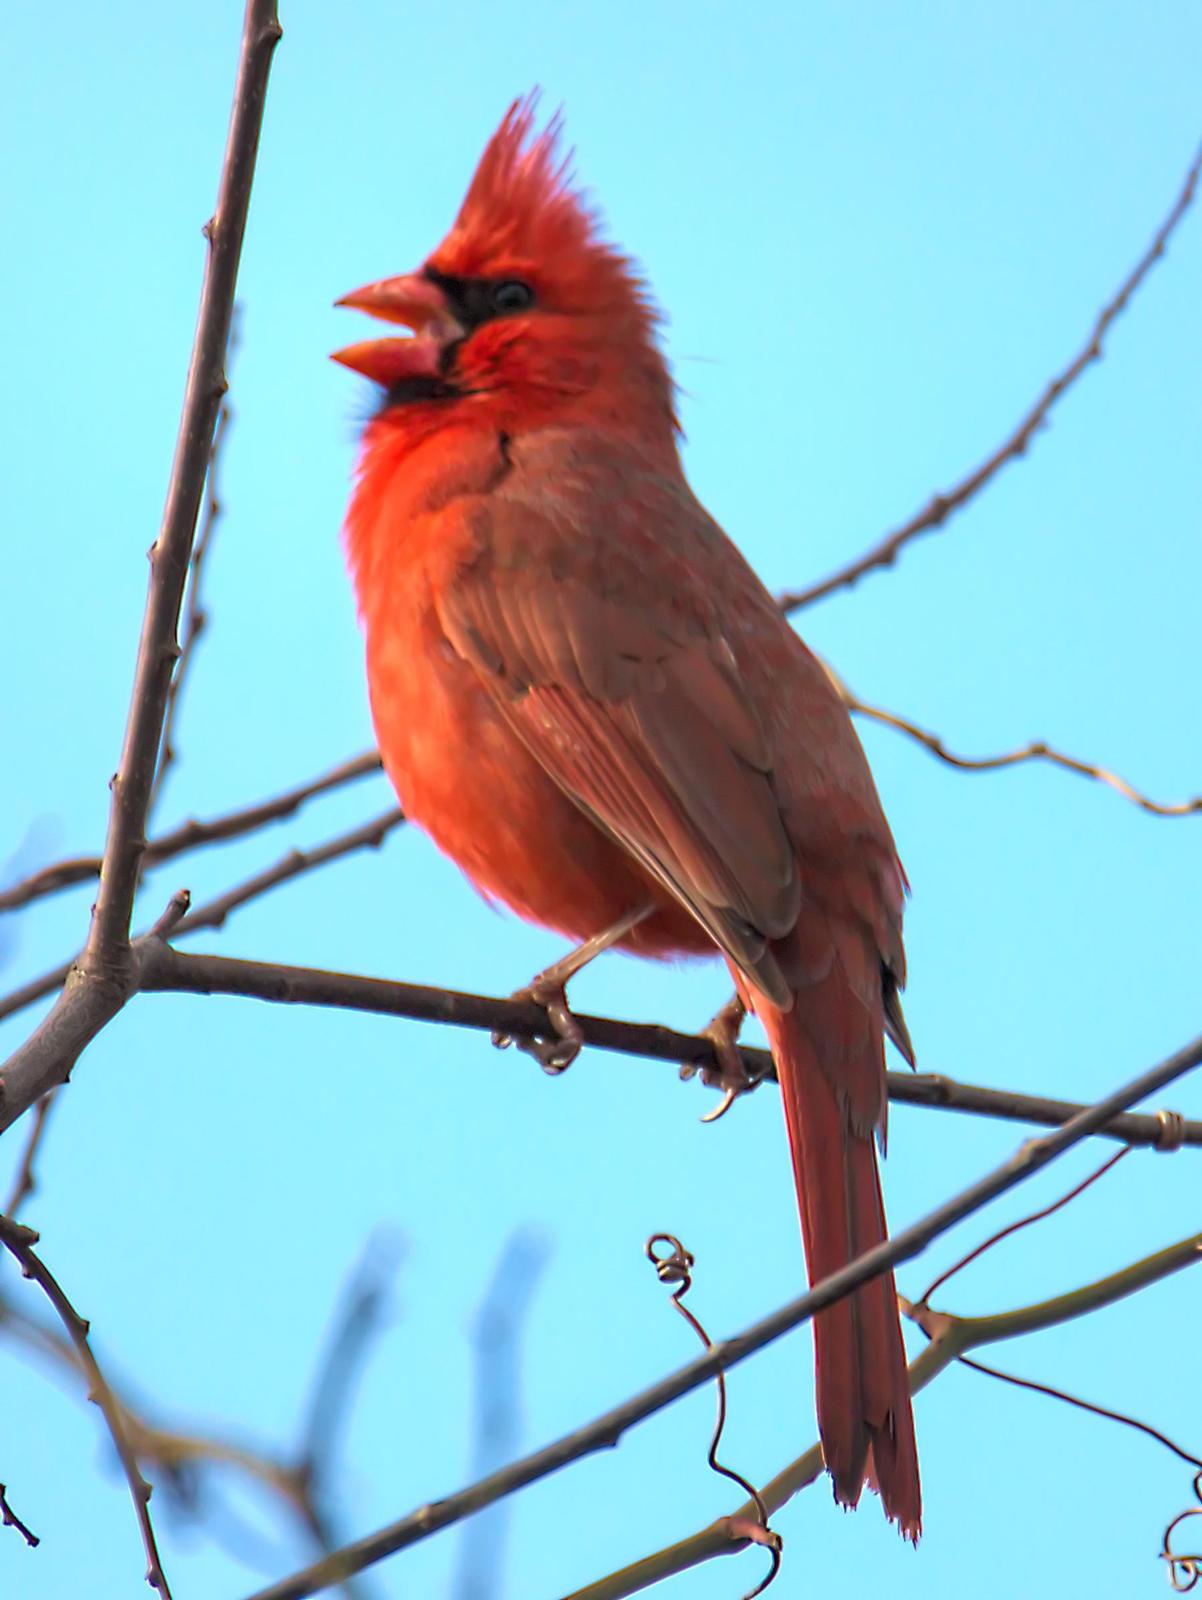 Northern Cardinal Photo by Dan Tallman